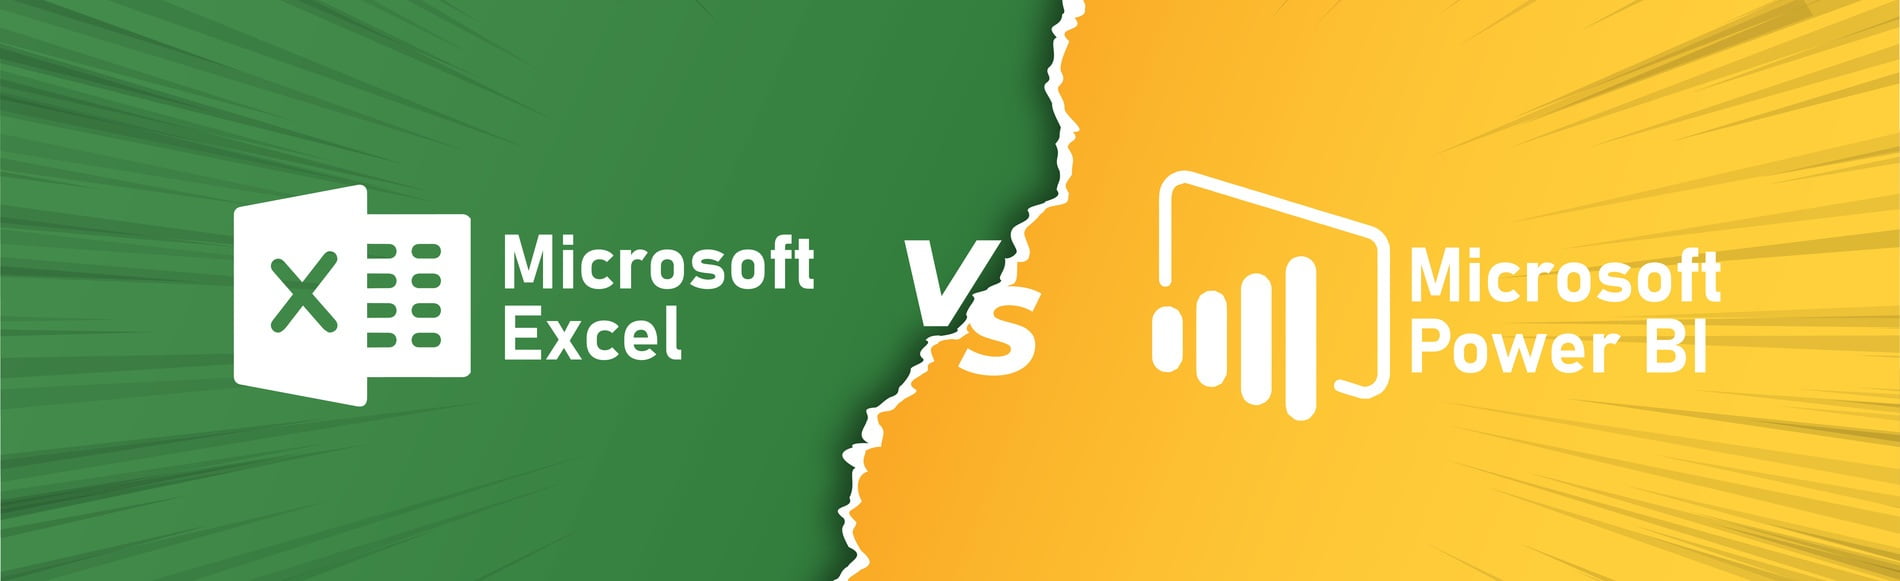 Microsoft Excel vs Microsoft Power BI